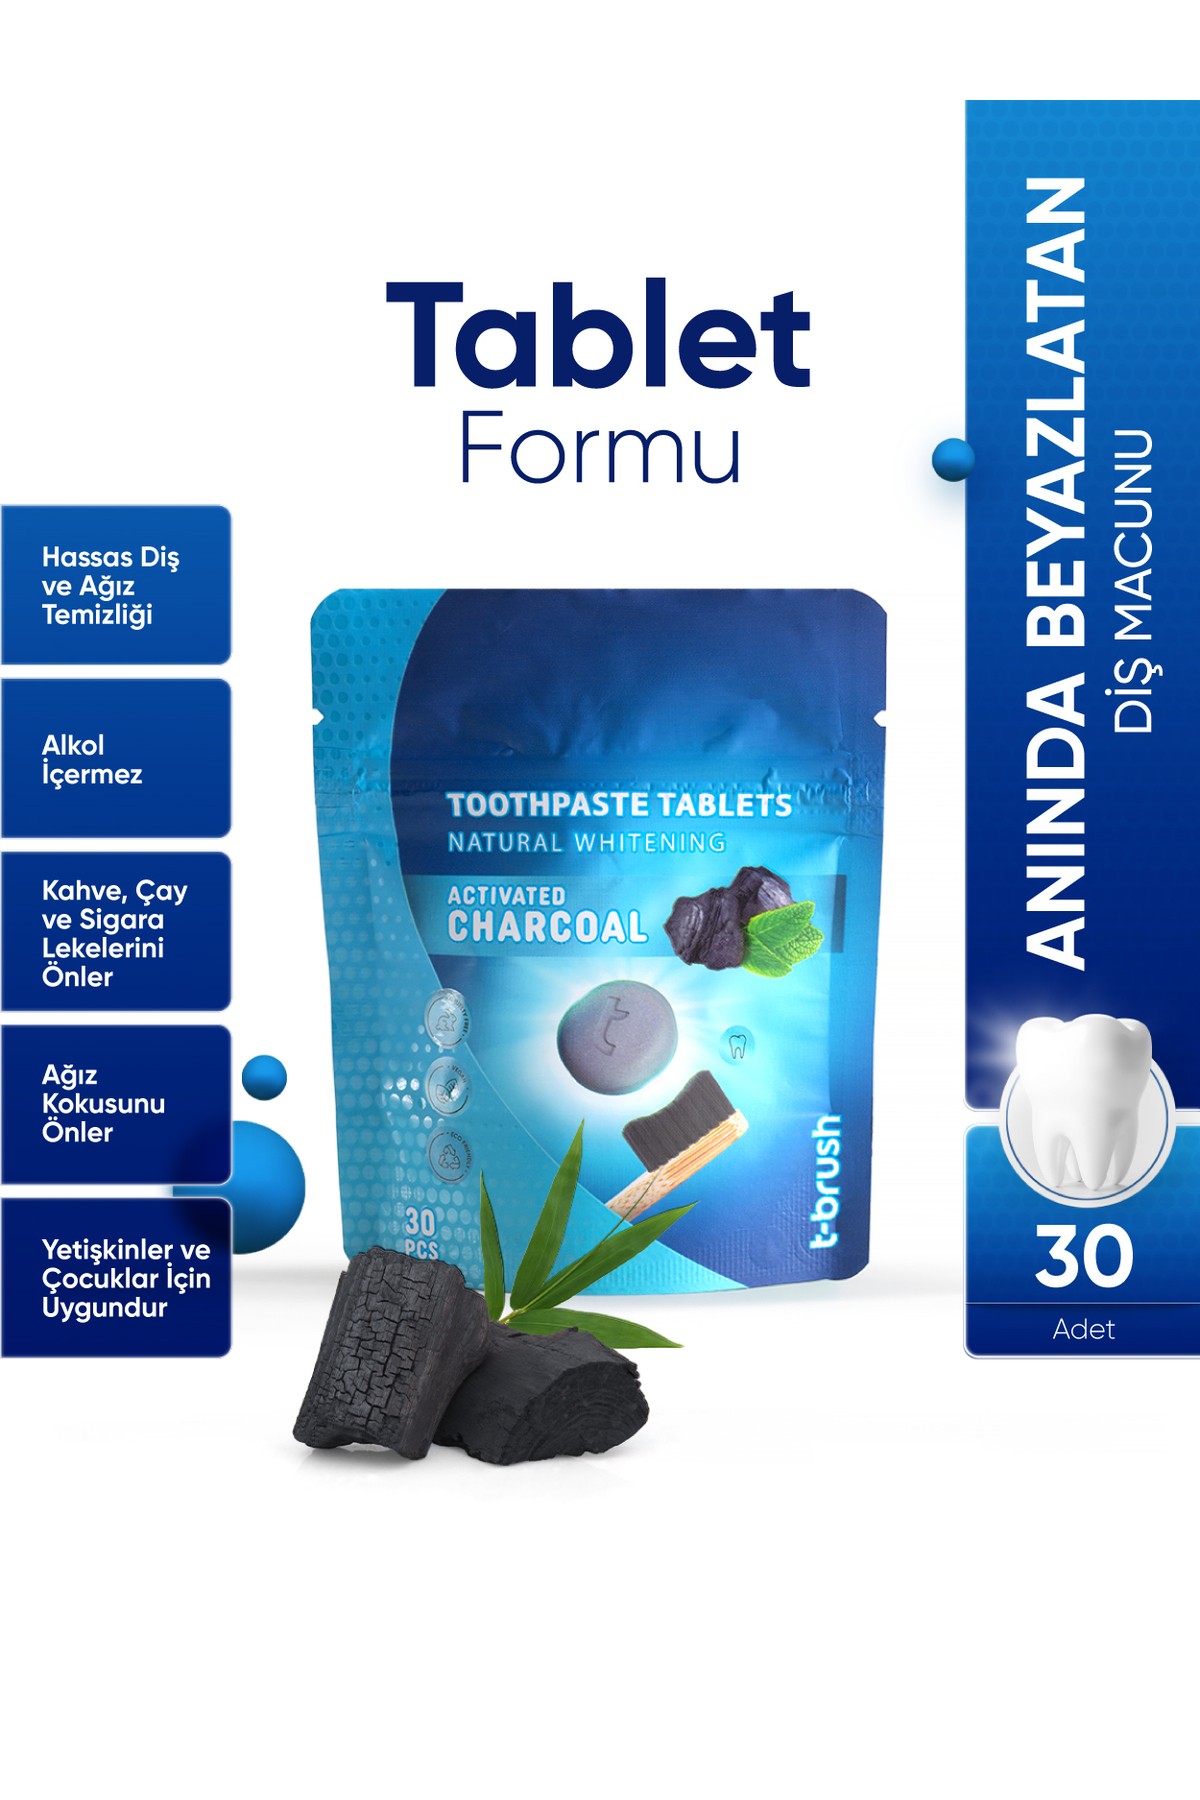 Ağız Kokusu Önleyici Nane Aromalı Pastil - Beyazlatıcı Aktif Karbonlu Diş Macunu Tableti 30 Tablet- Ağız Kokusu Önleyici Nane Aromalı Pastil - Nane Aromalı Ağız Çalkalama Tableti - 30 Tablet